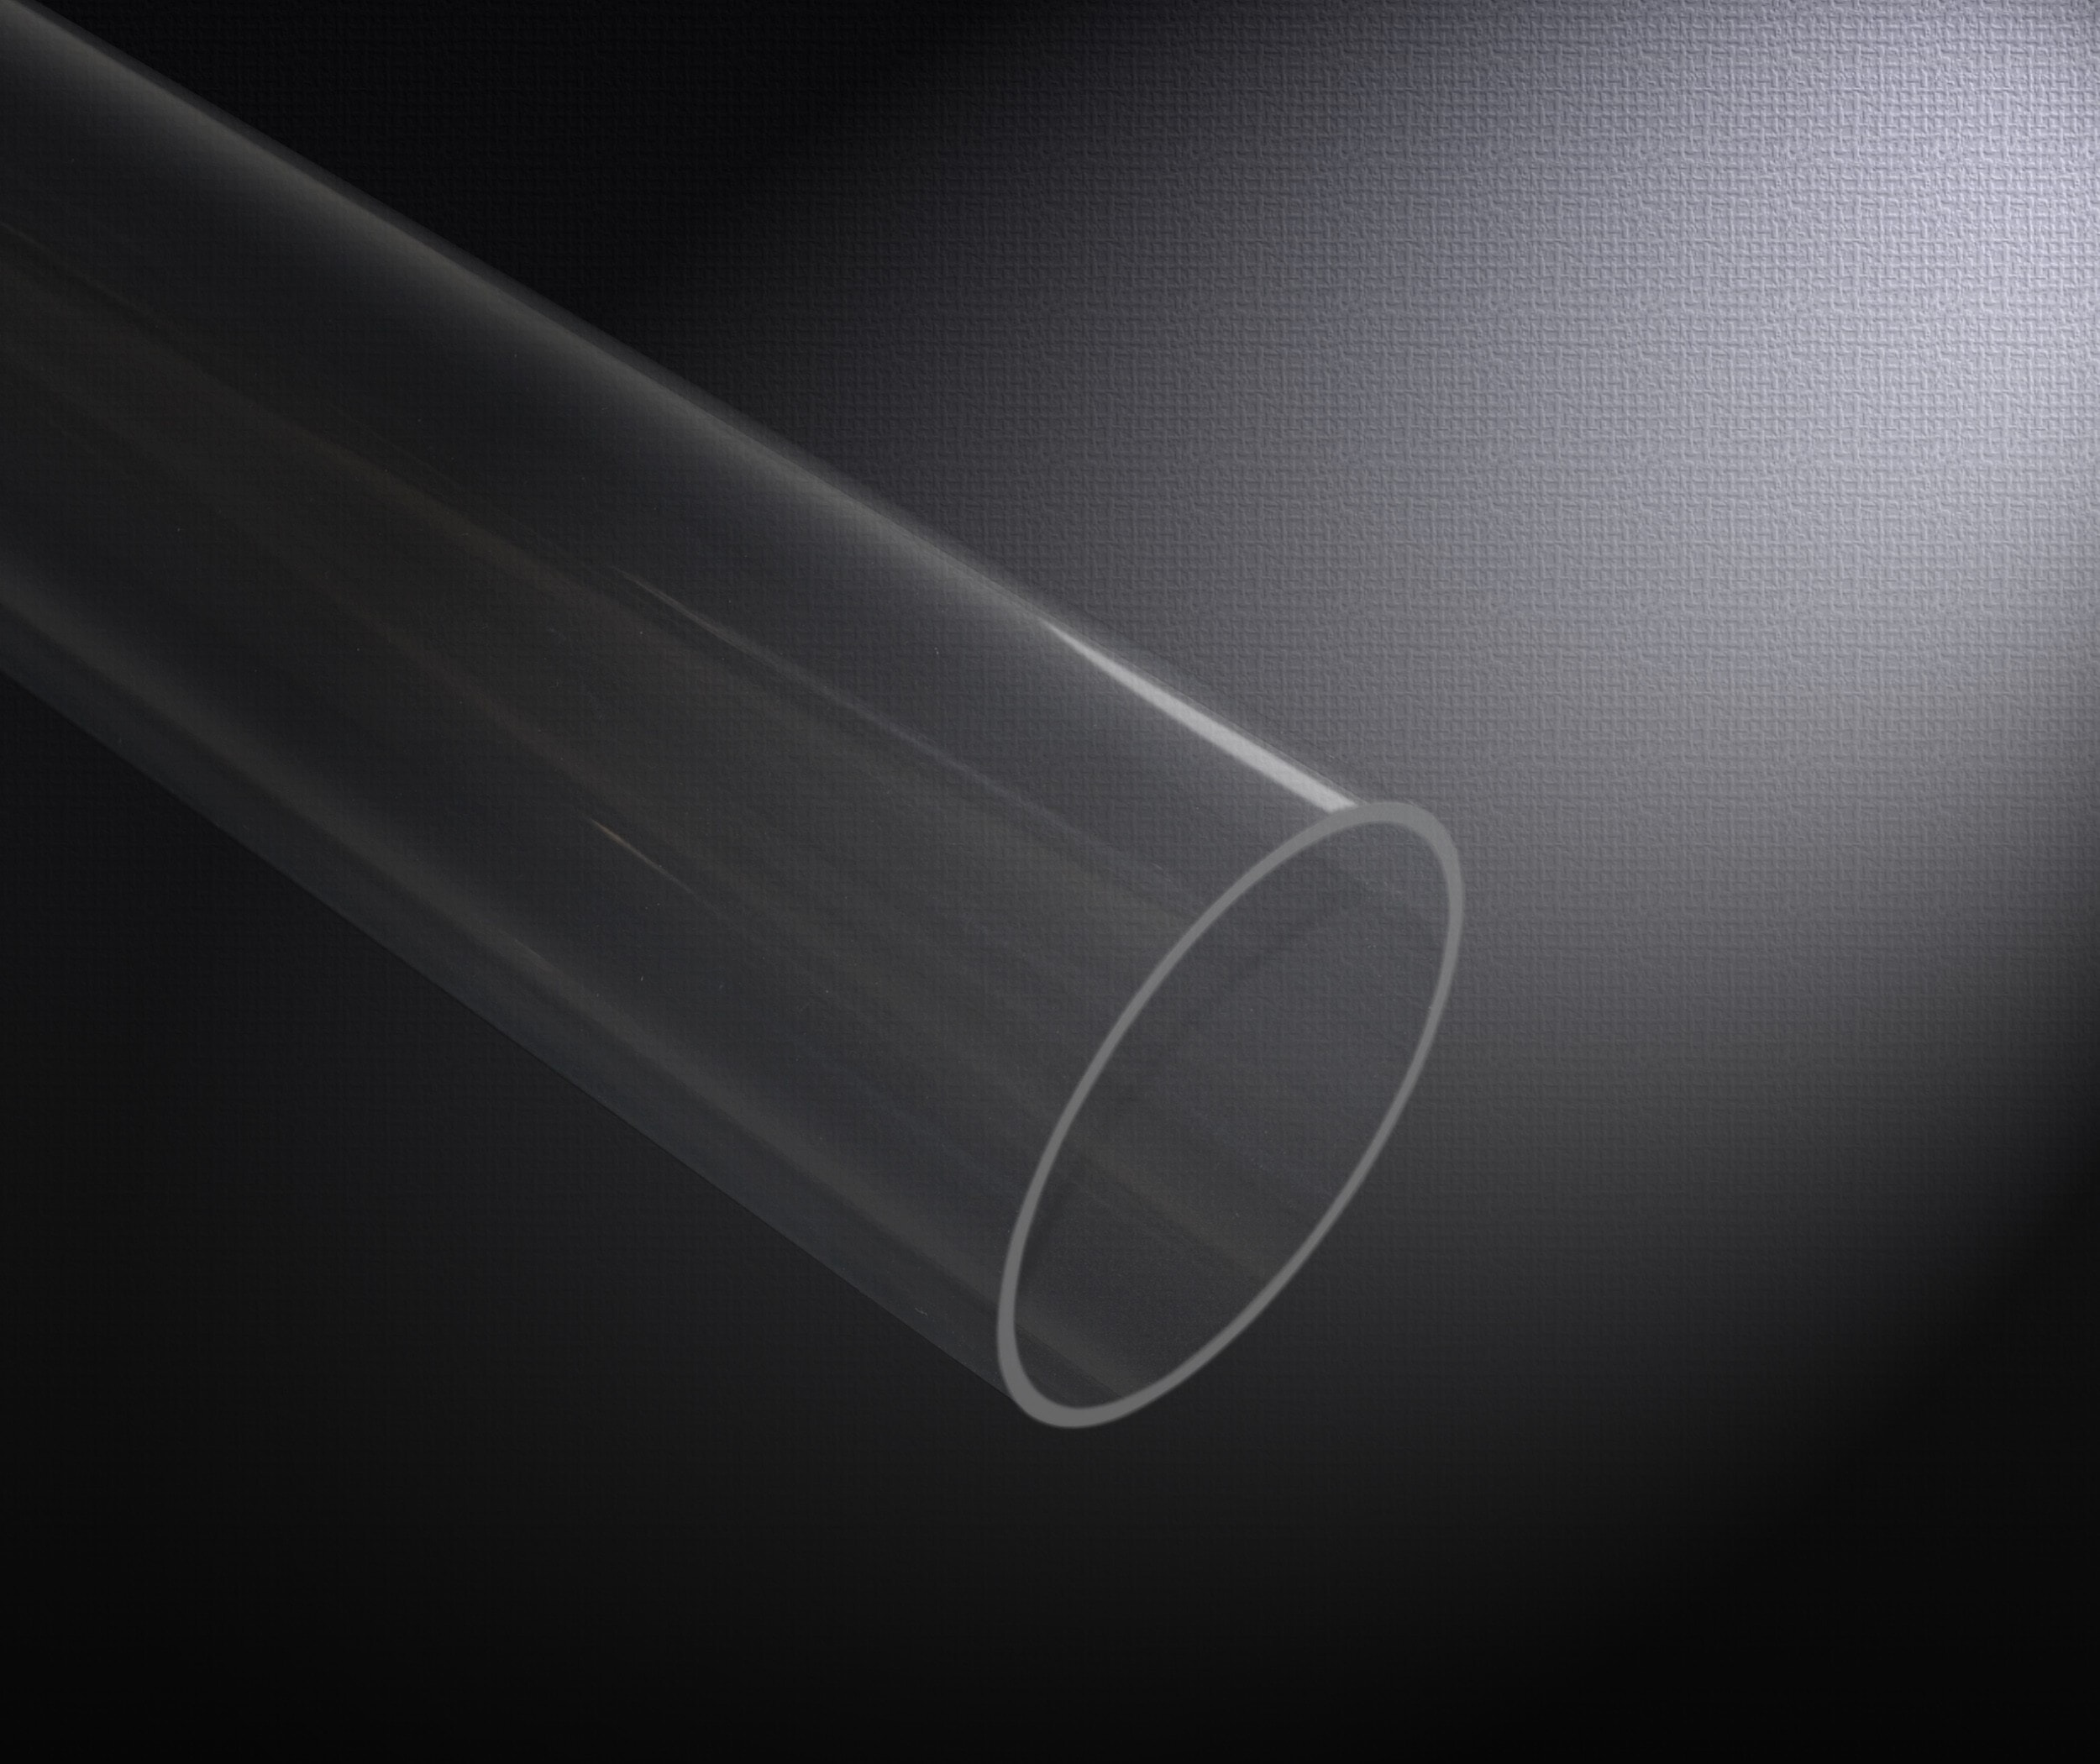 Protège-jeton transparent – en acrylique – 40mm de diamètre